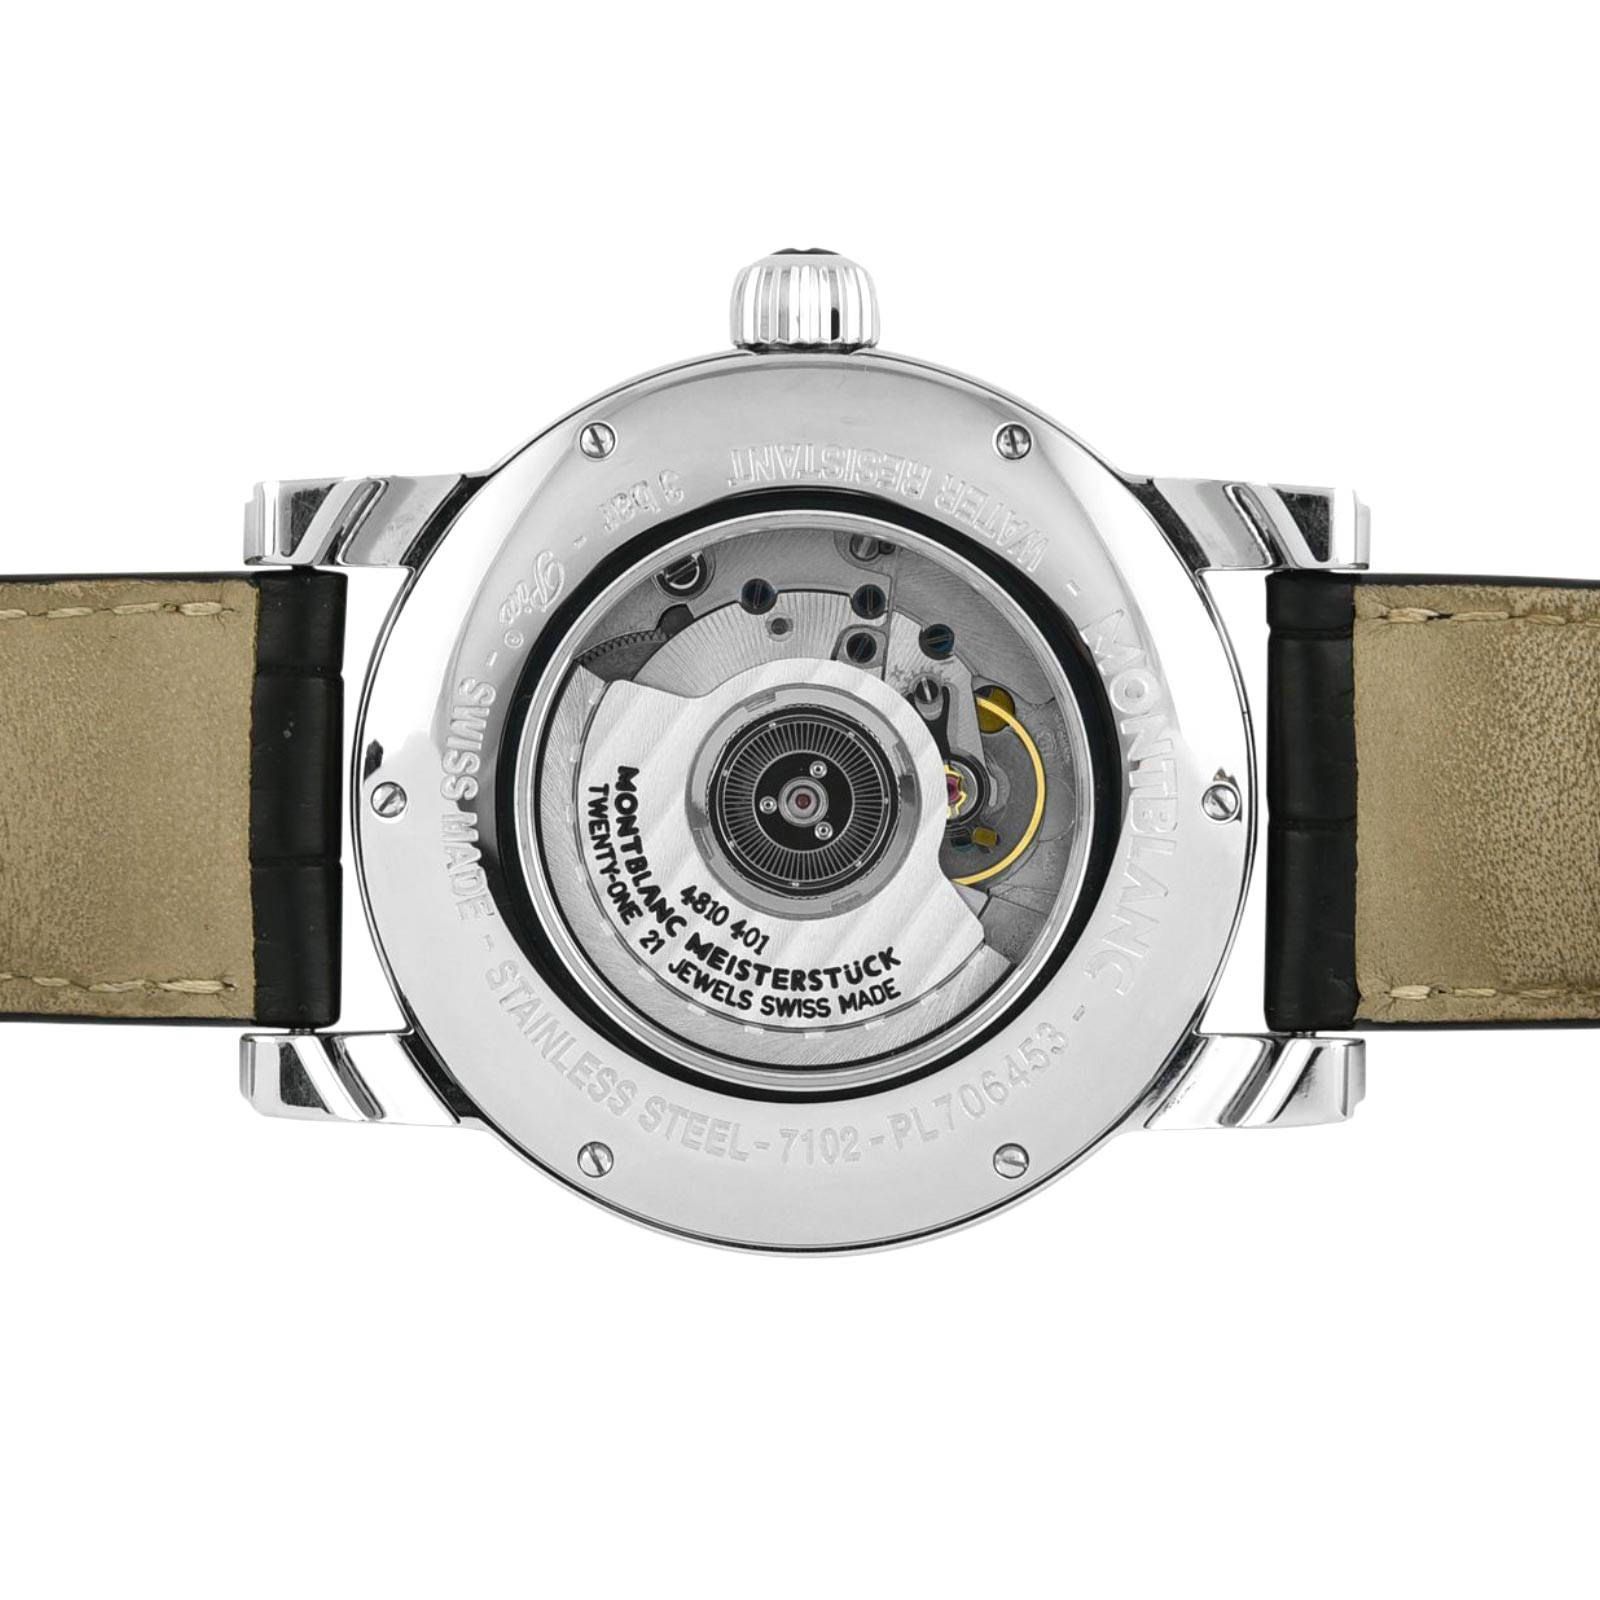 Montblanc Watch